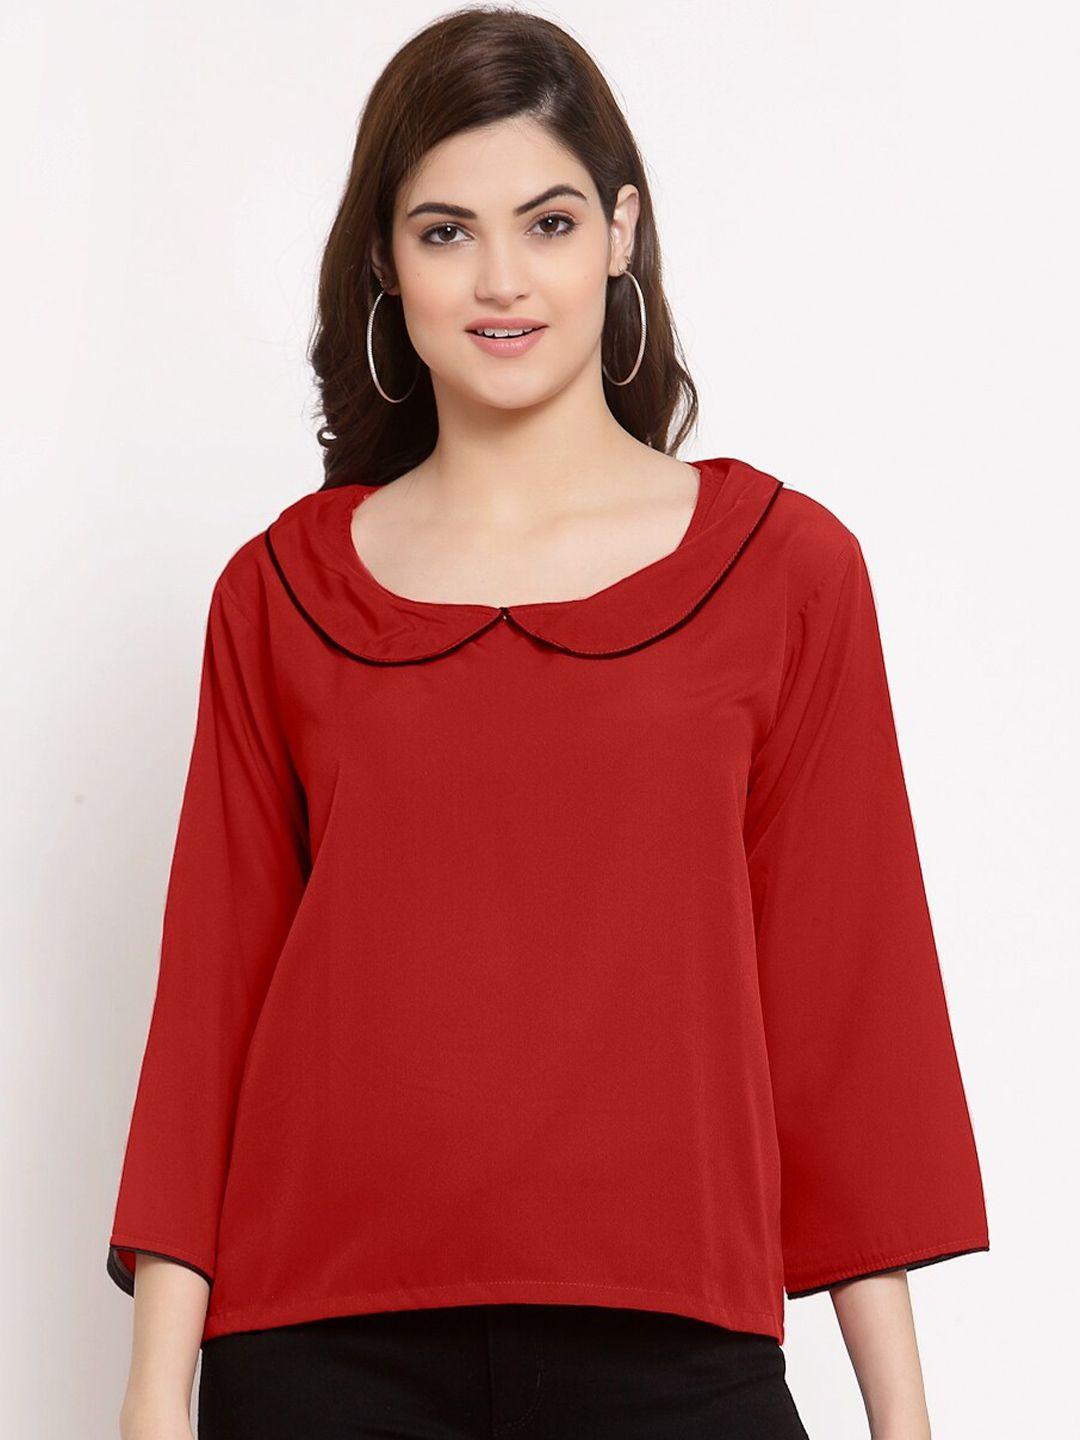 patrorna women maroon solid peter pan collar long sleeves top